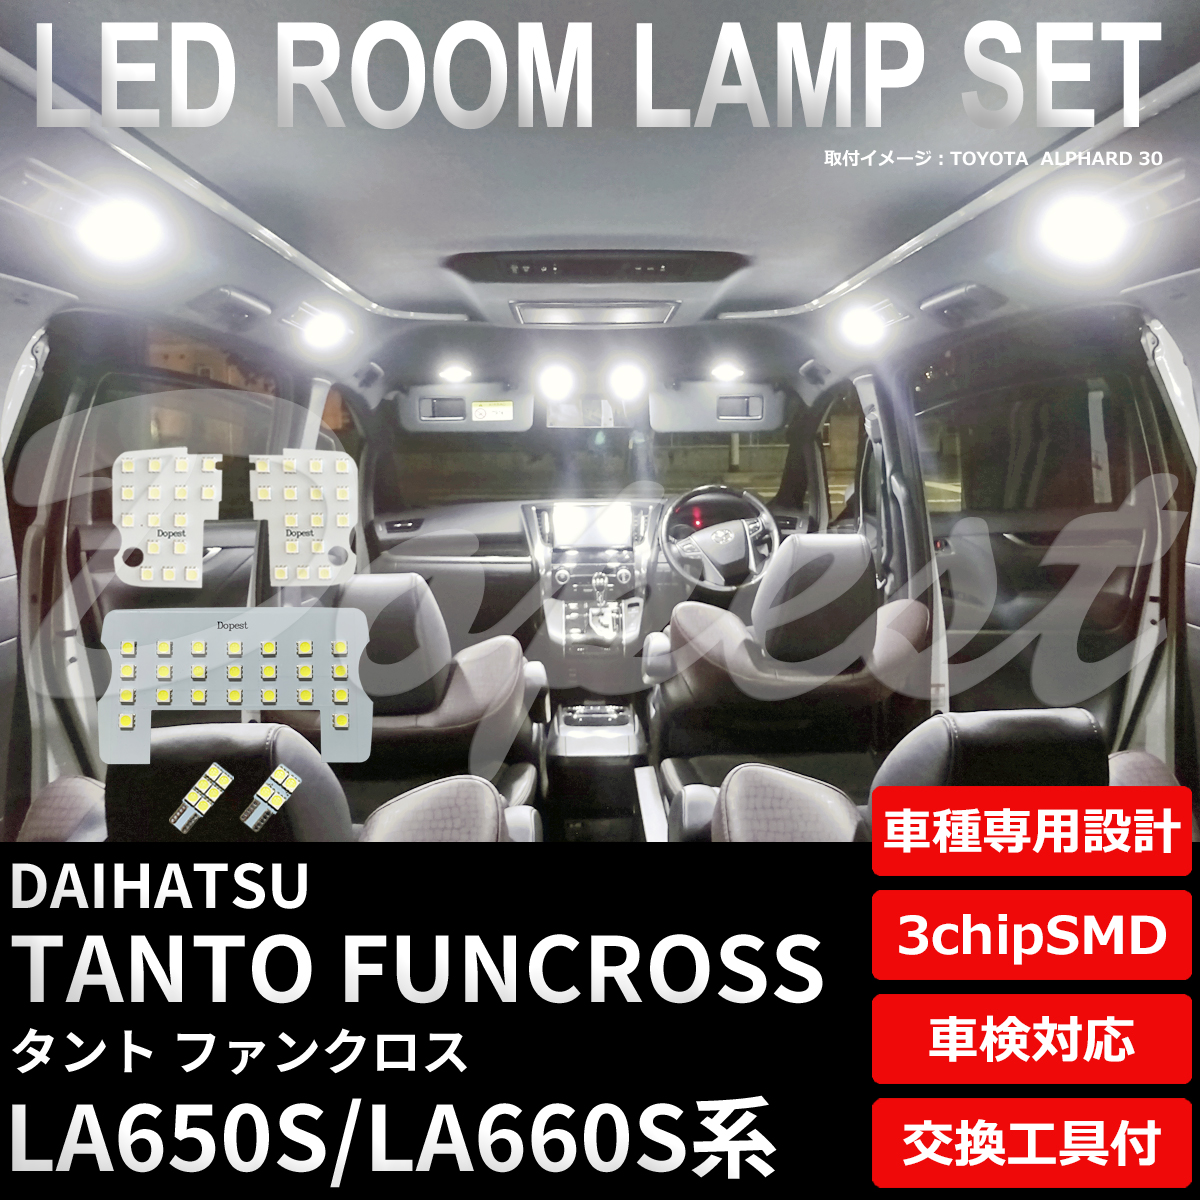 タント ファンクロス LEDルームランプセット LA650S/LA660S系